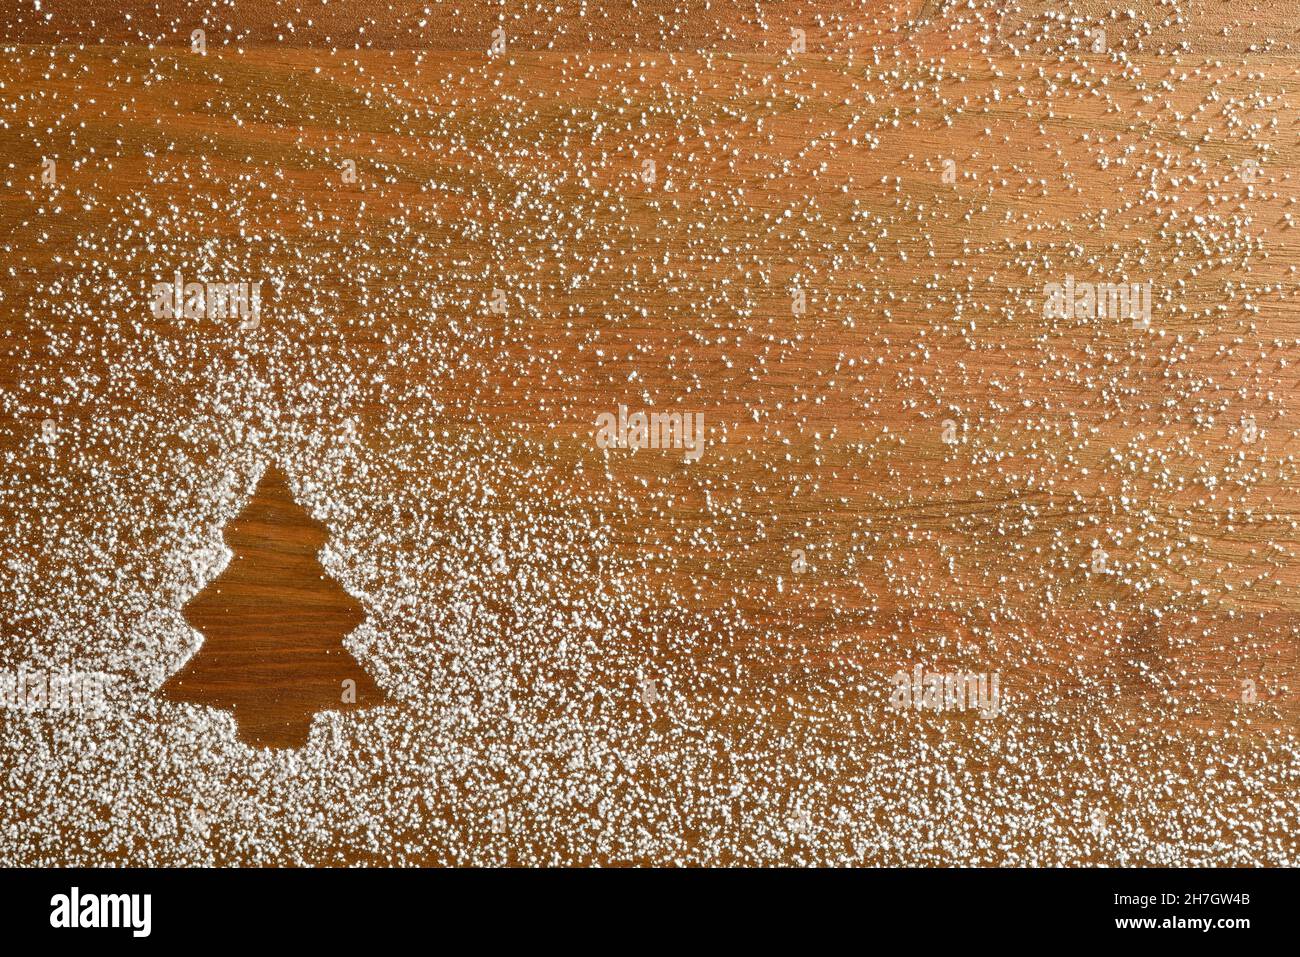 Fond de Noël en forme de sapin dessiné avec de la poudre de sucre glace sur base en bois.Vue de dessus.Composition horizontale. Banque D'Images